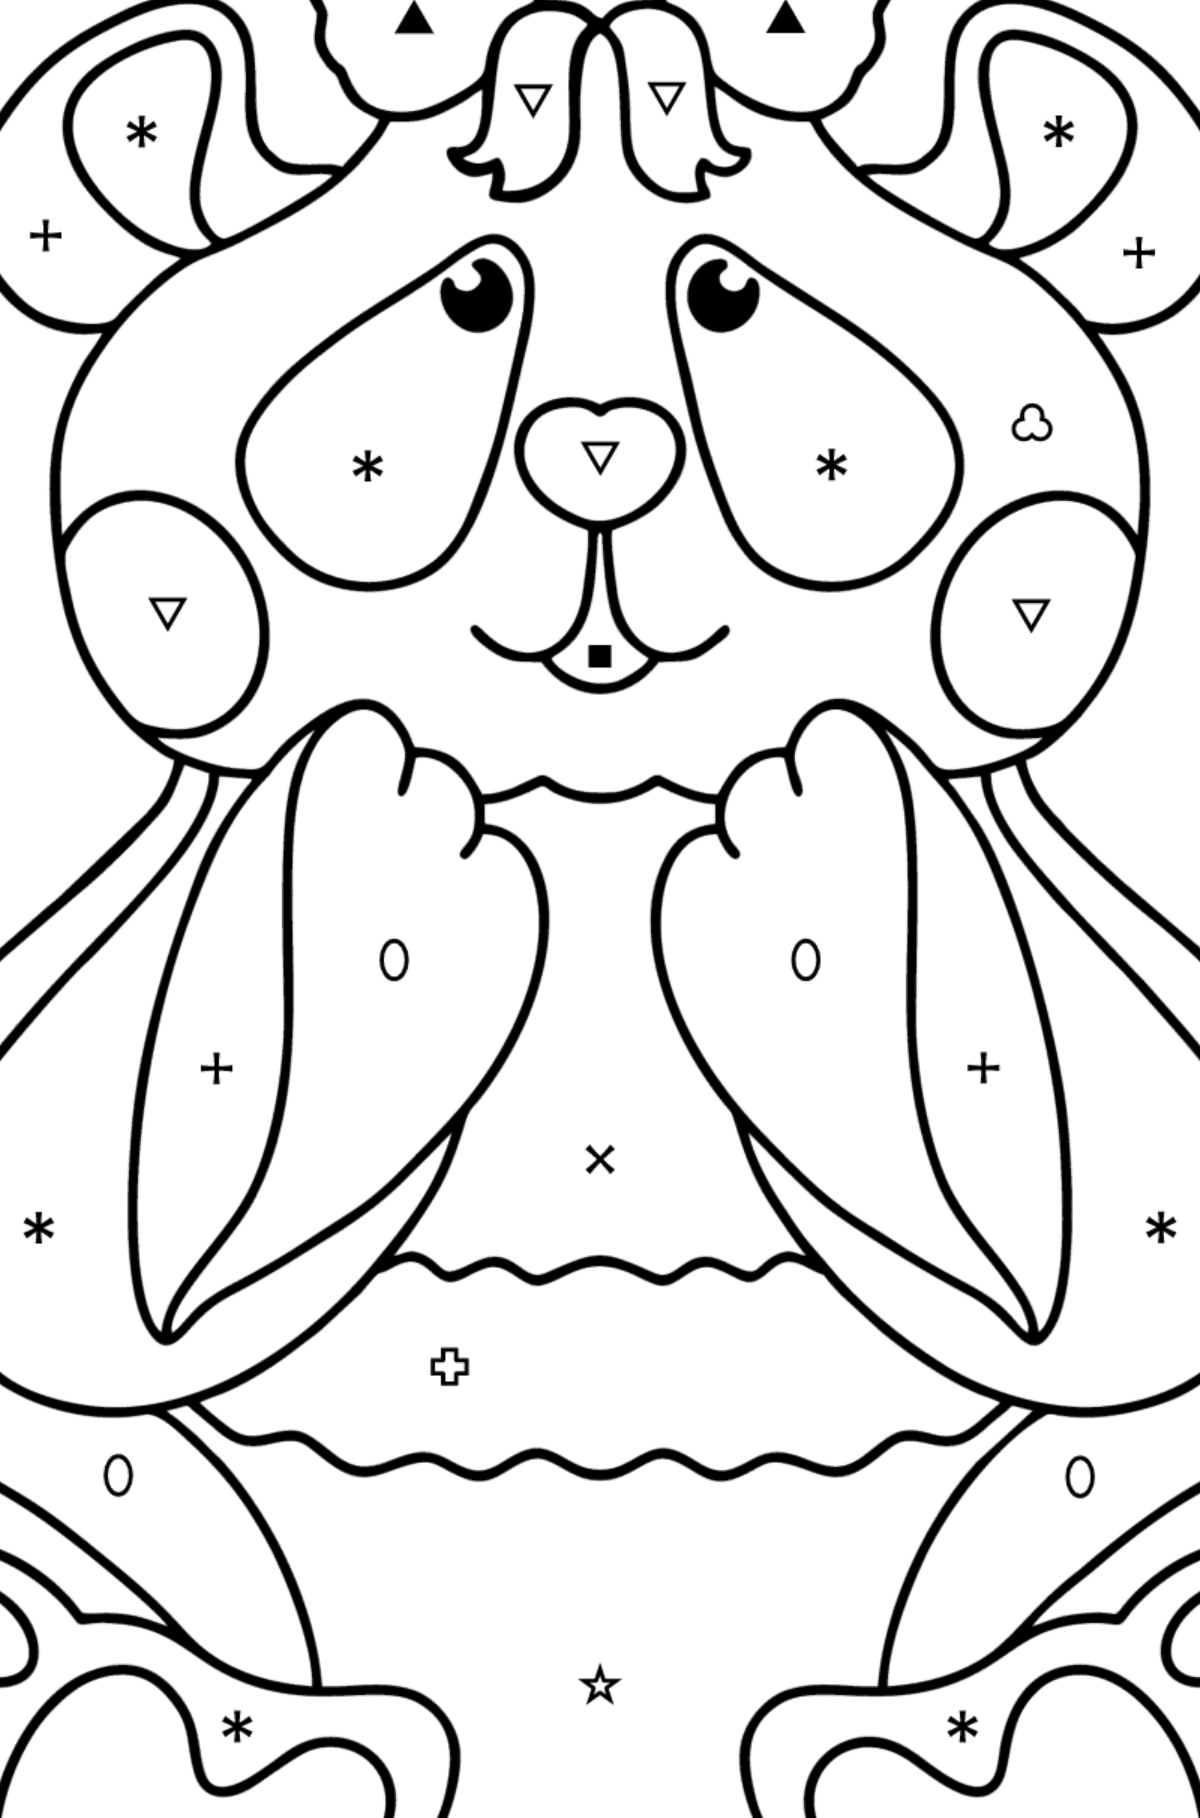 Tegning til fargelegging baby panda - Fargelegge etter symboler og geometriske former for barn